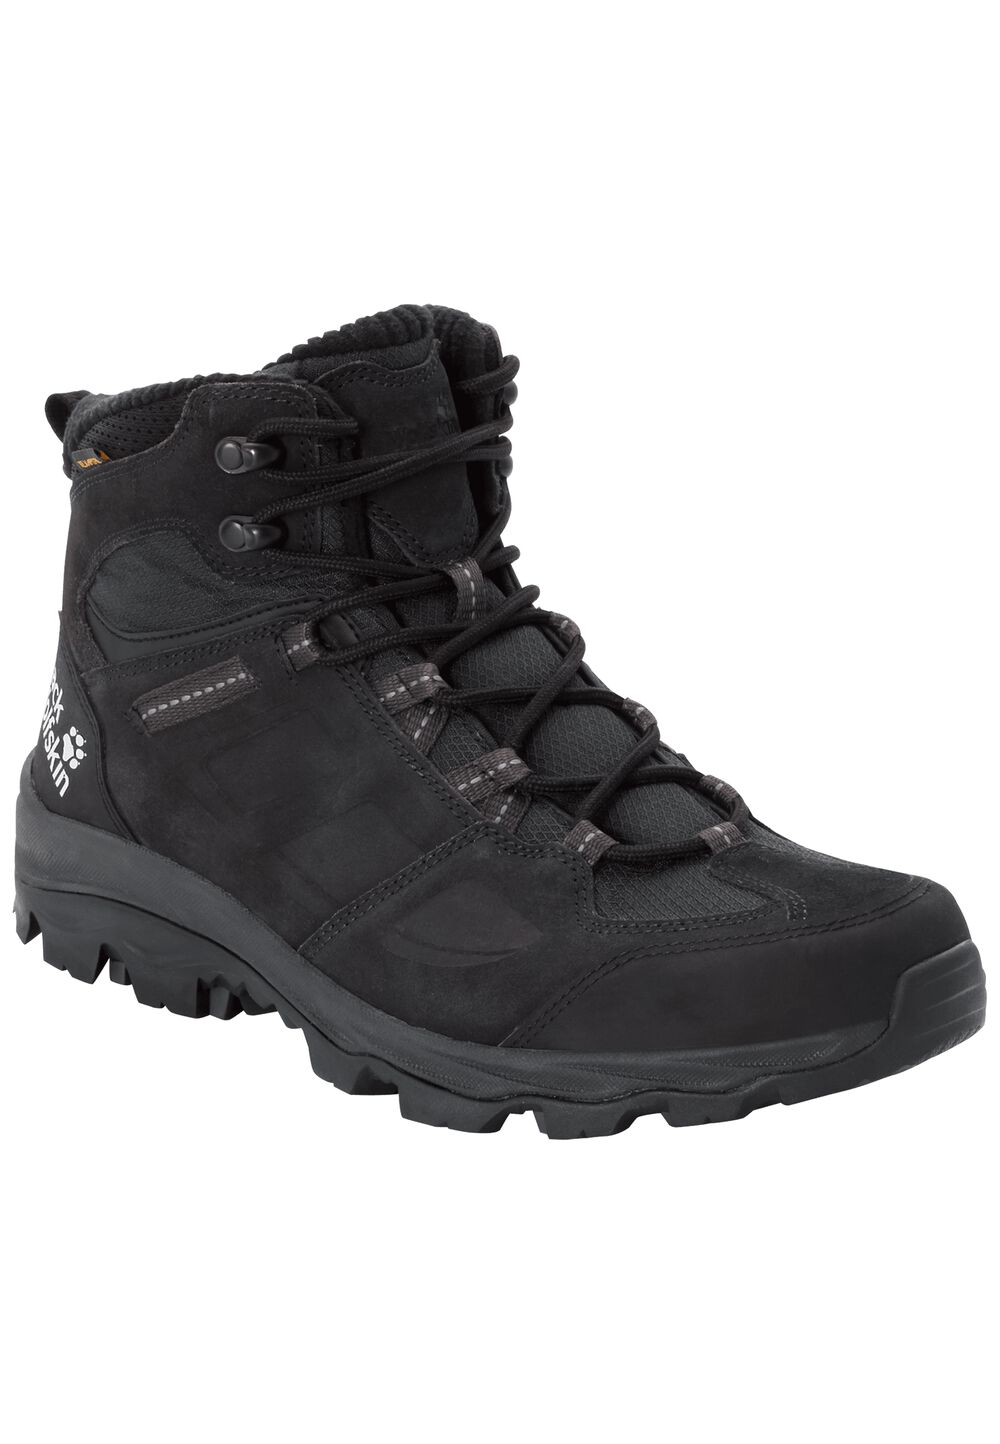 Chaussures de randonnée imperméables hommes Vojo 3 WT Texapore Mid Men 9,5 gris phantom / black